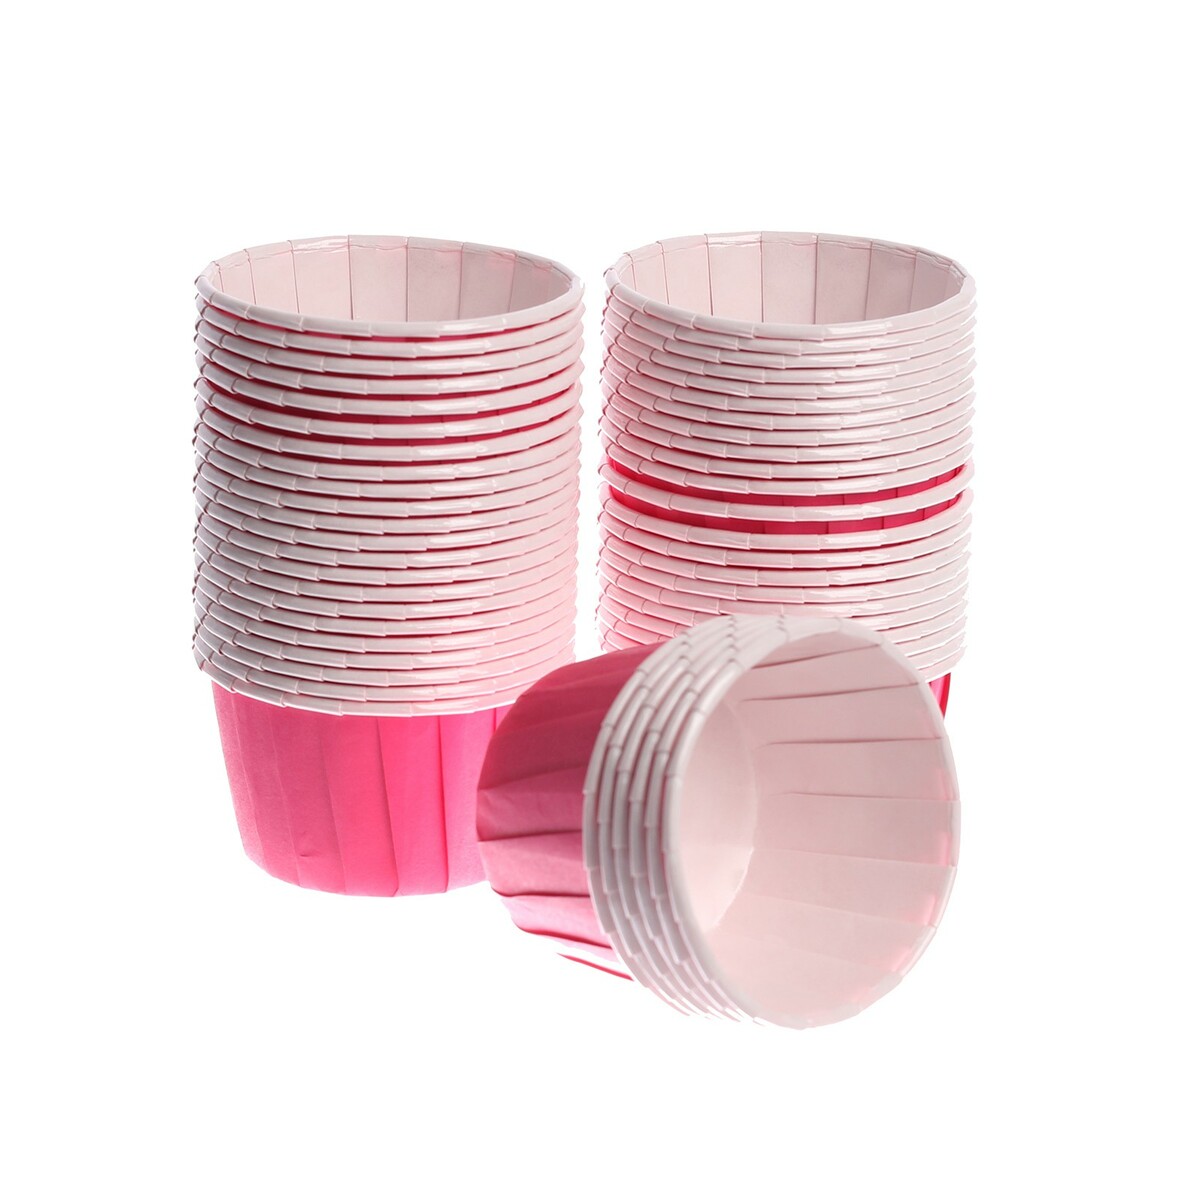 Тарталетка для кексов, набор, 50 шт., цвет розовый набор форм для кексов ghidini 12 шт